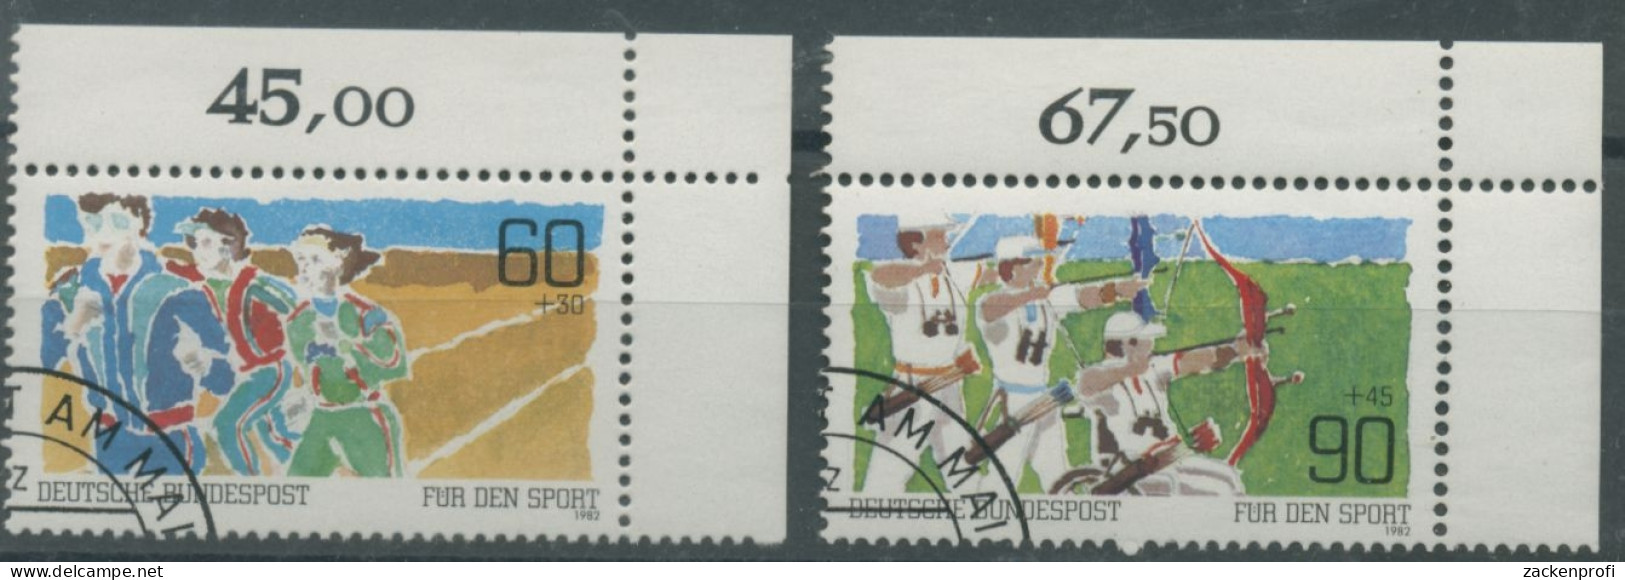 Bund 1982 Sporthilfe Breiten/-Behindertensport 1127/28 Ecke 2 Gestempelt (E147) - Used Stamps